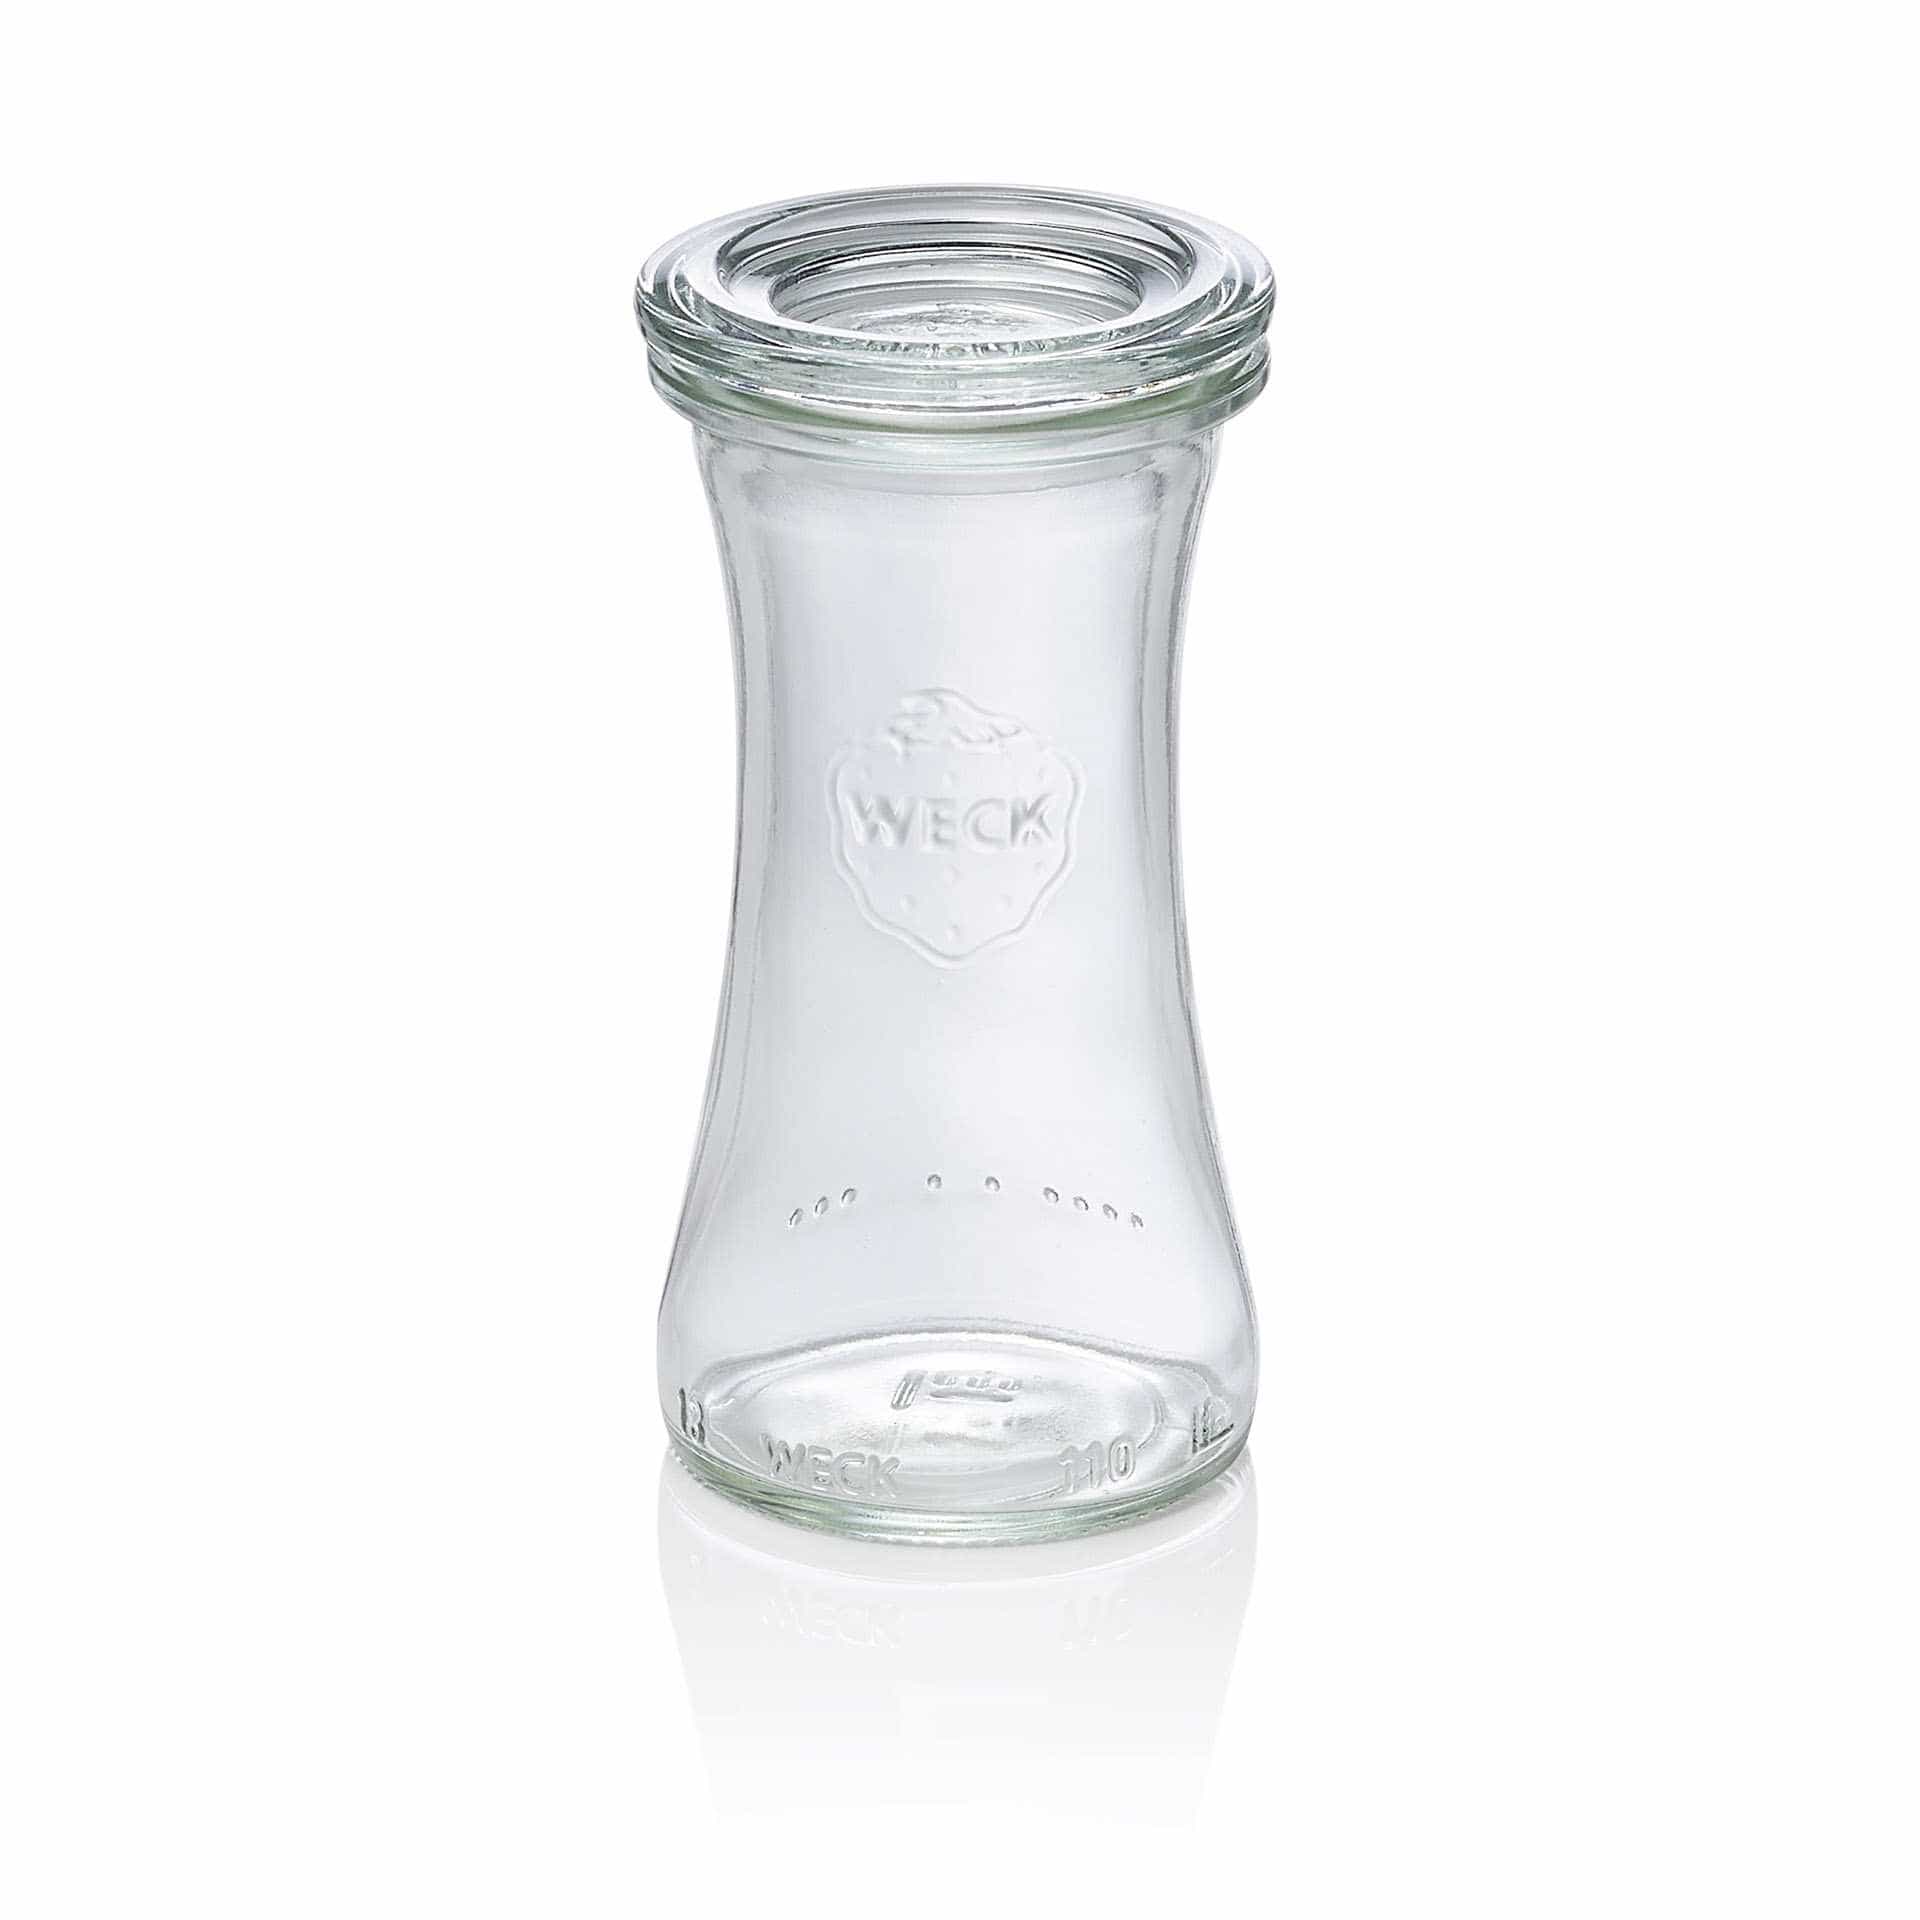 Delikatessenglas - Set á 6 Stück - Serie Delicacy - Abm. 10,2 cm - Ø oben / unten 4,0 / 5,6 cm - Inhalt 0,1 l - Glas - 757-A